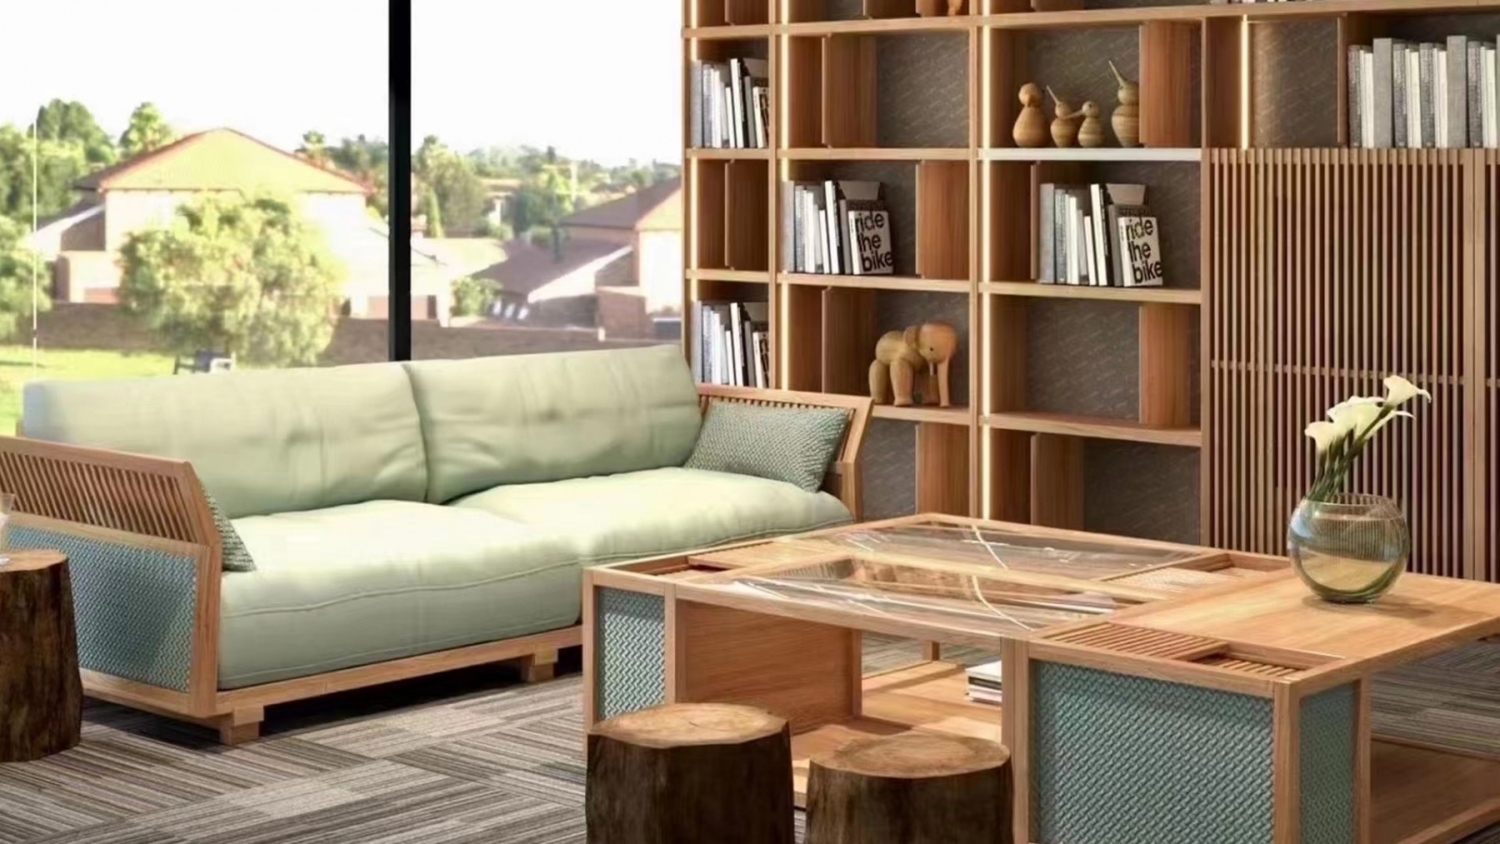 功匠工房客厅实木家具-沙发+茶几组合15